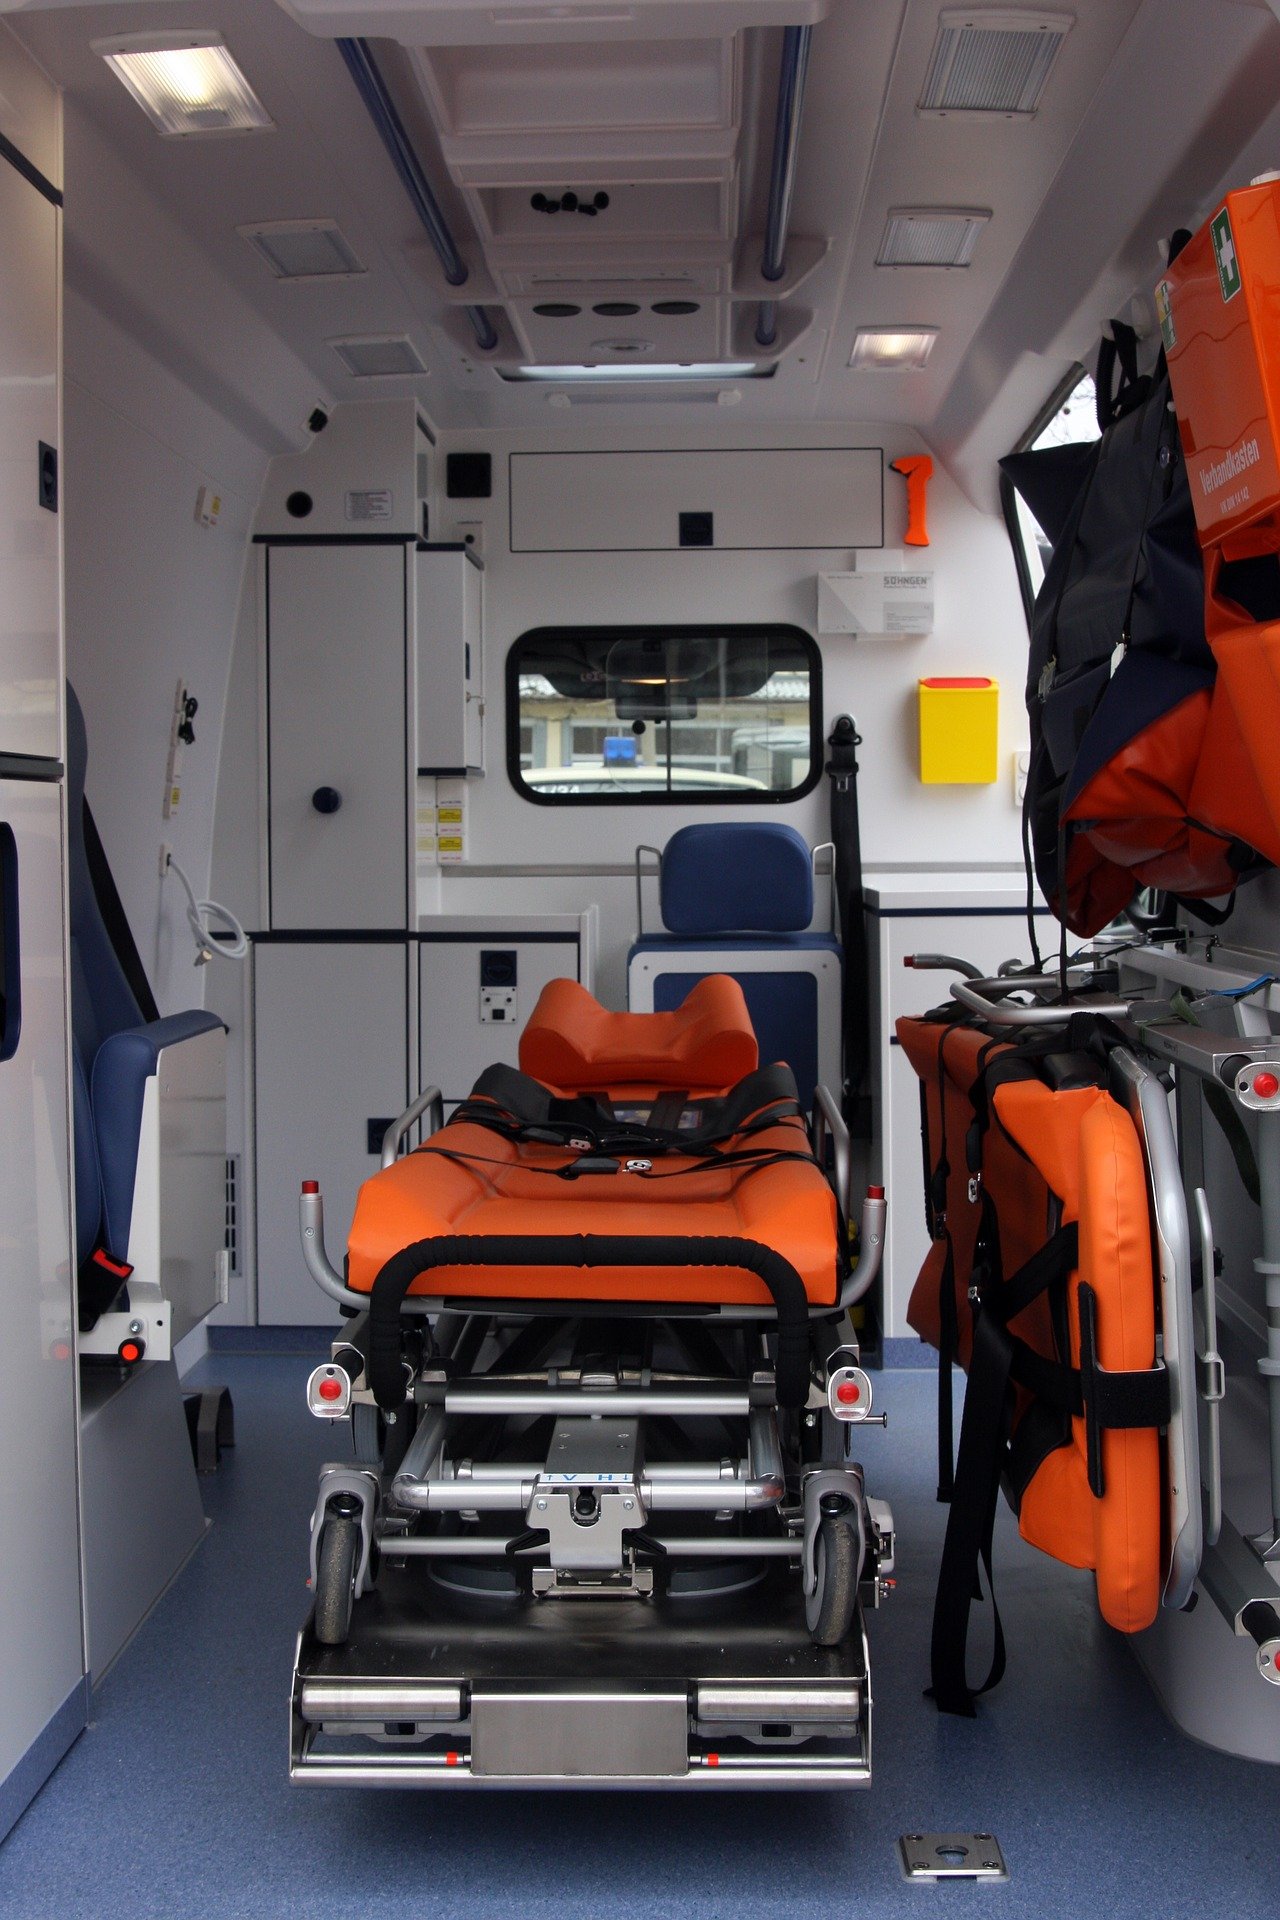 Intérieur d'une ambulance.| Photo : Pixabay